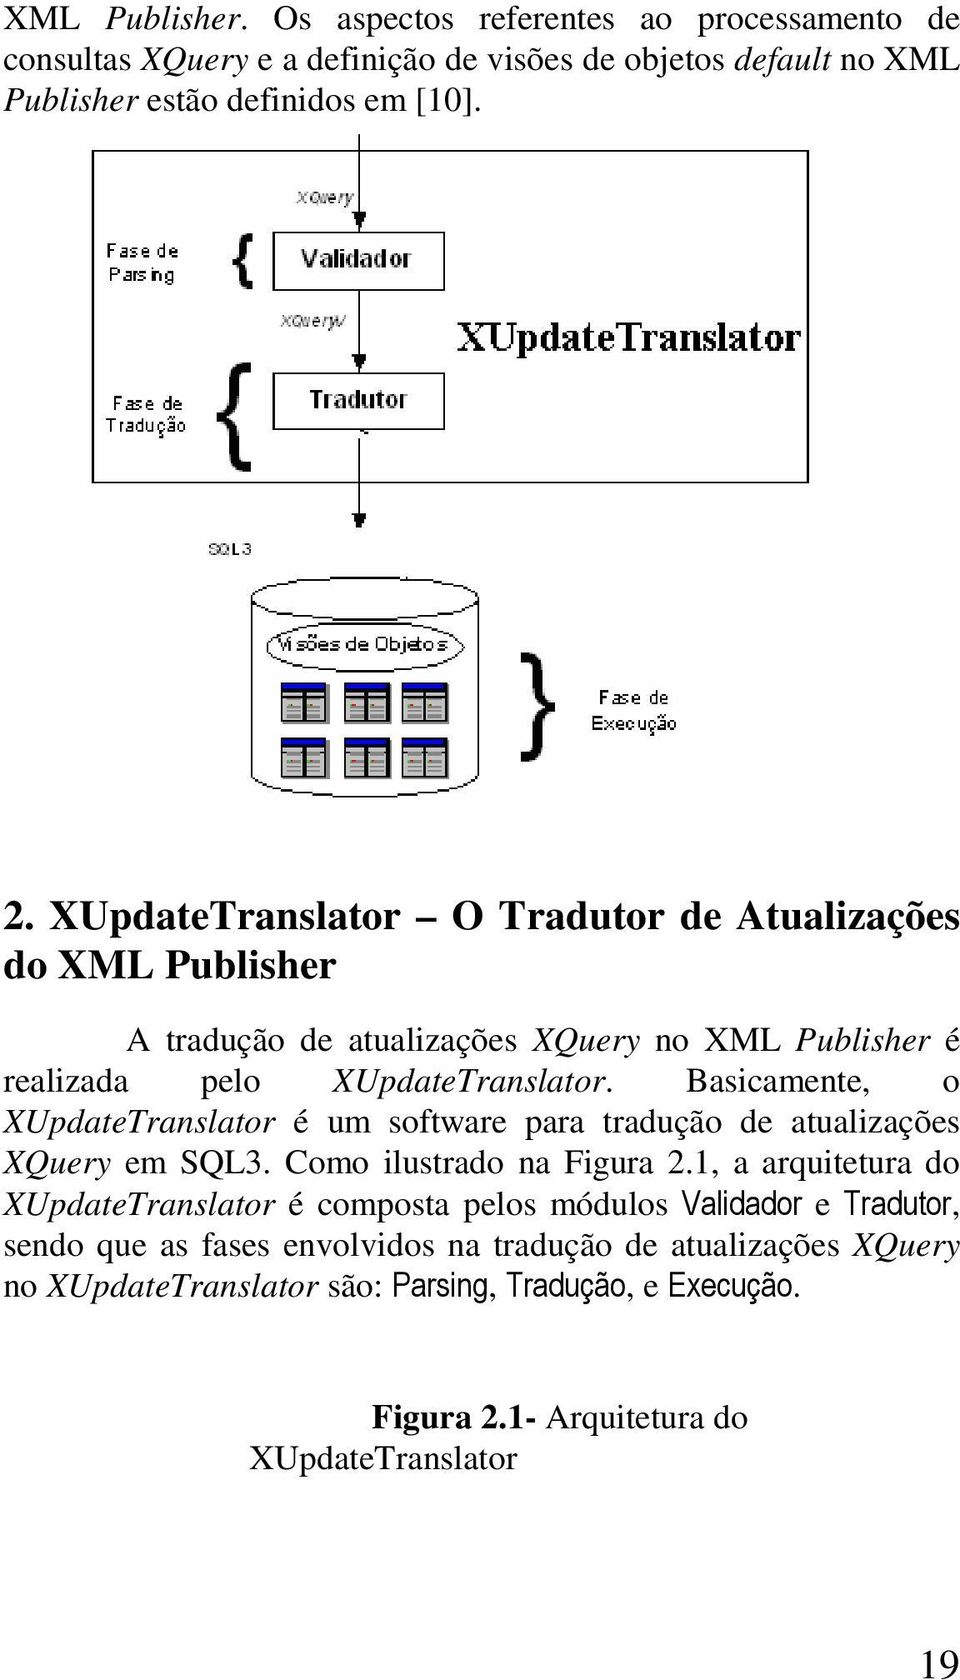 Basicamente, o XUpdateTranslator é um software para tradução de atualizações XQuery em SQL3. Como ilustrado na Figura 2.